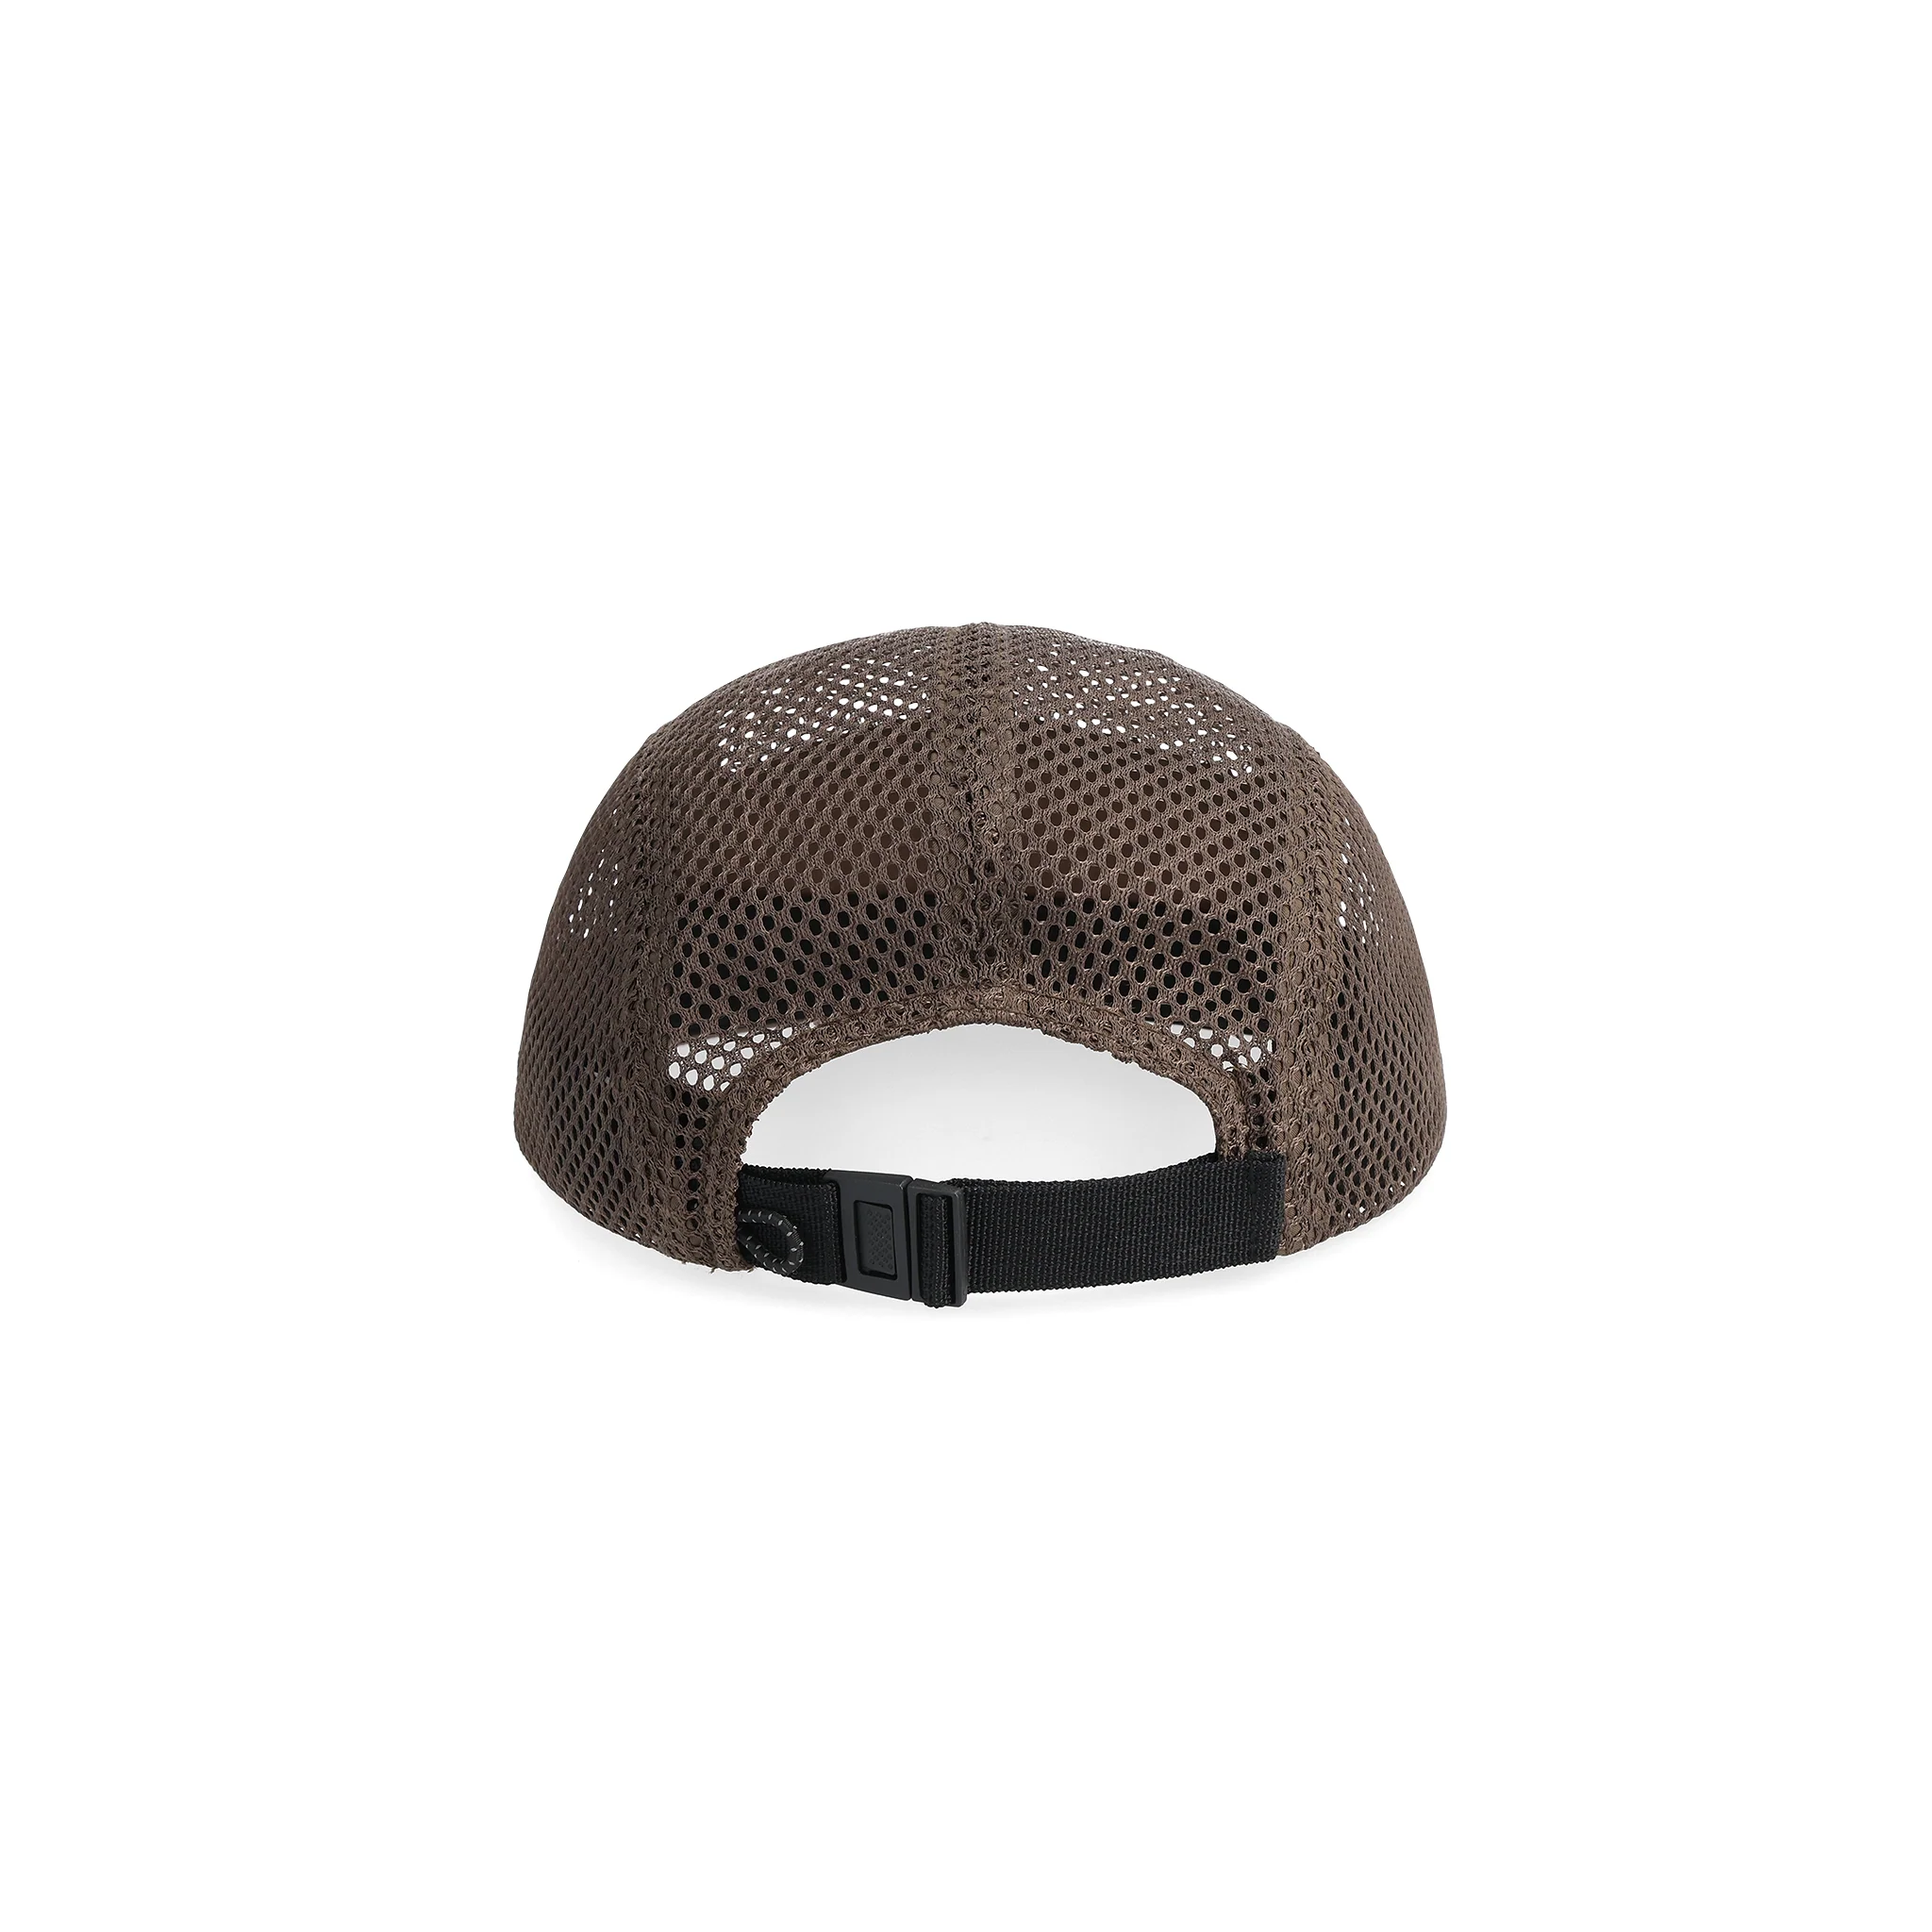 Topo Designs Canada, Accessories/Hats